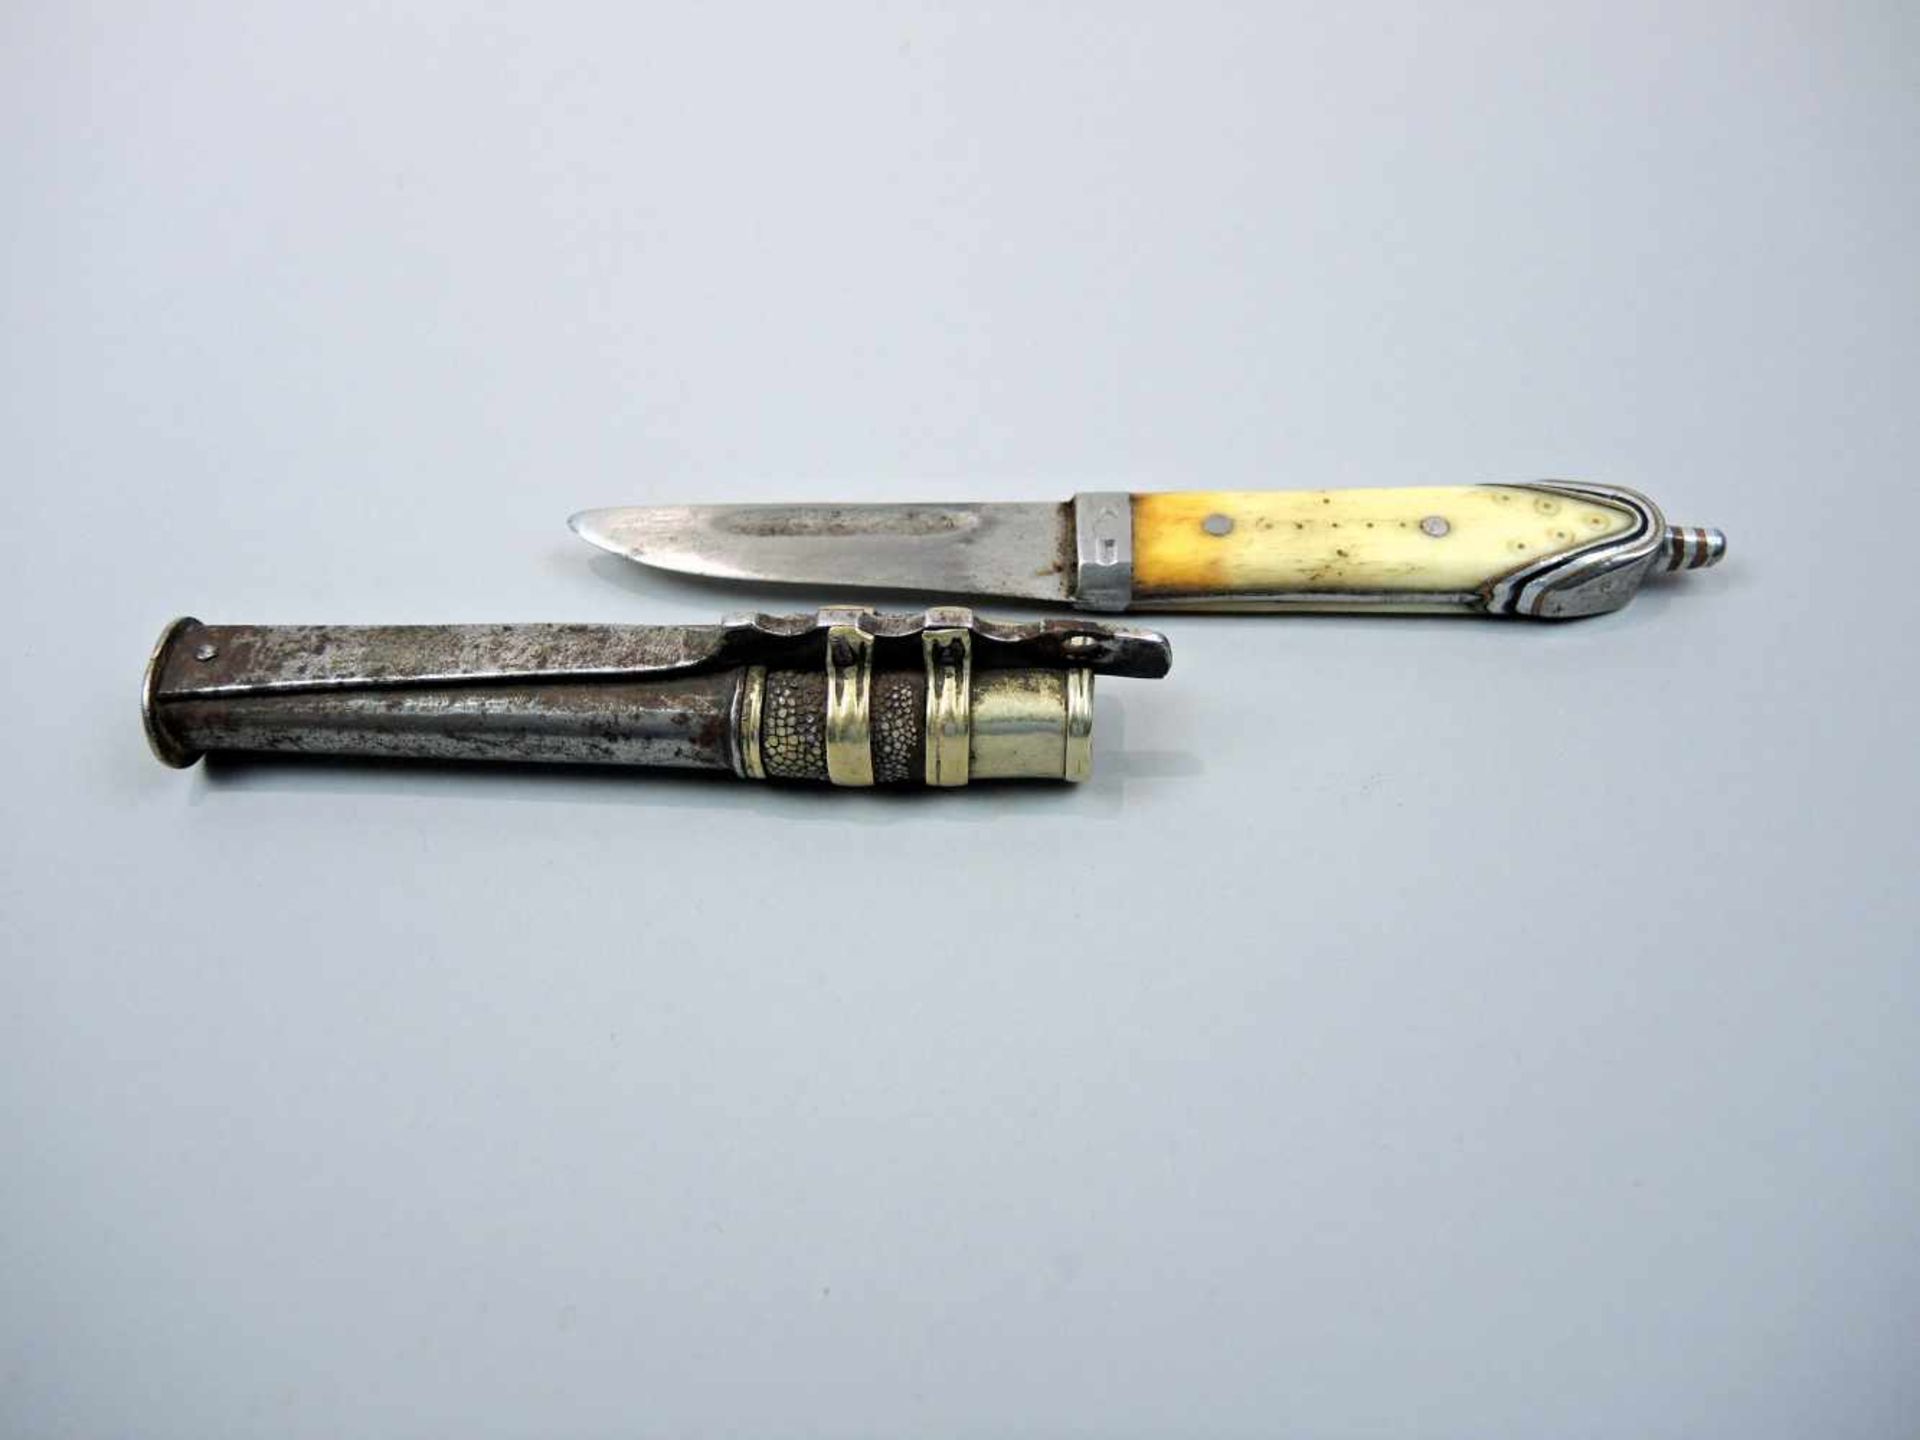 Handgearbeites Jagdmesser Metall und Horn. Handgeschliffenes Messer mit Horngriff und gold-schwarzen